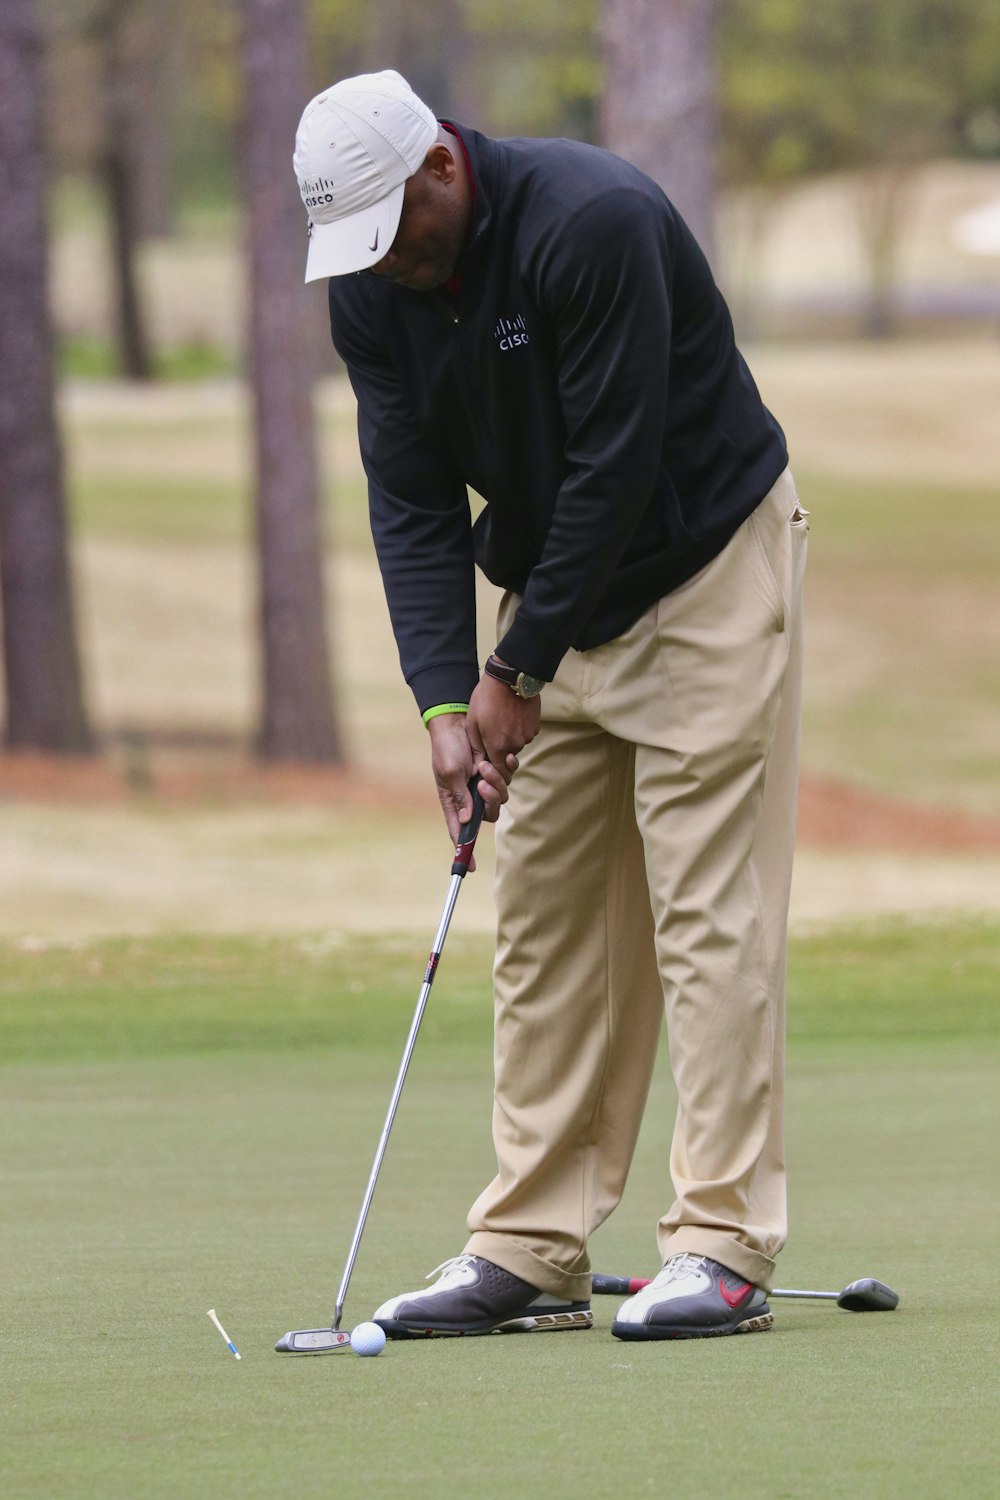 Mann in schwarzer Jacke und beiger Hose beim Golfspielen tagsüber